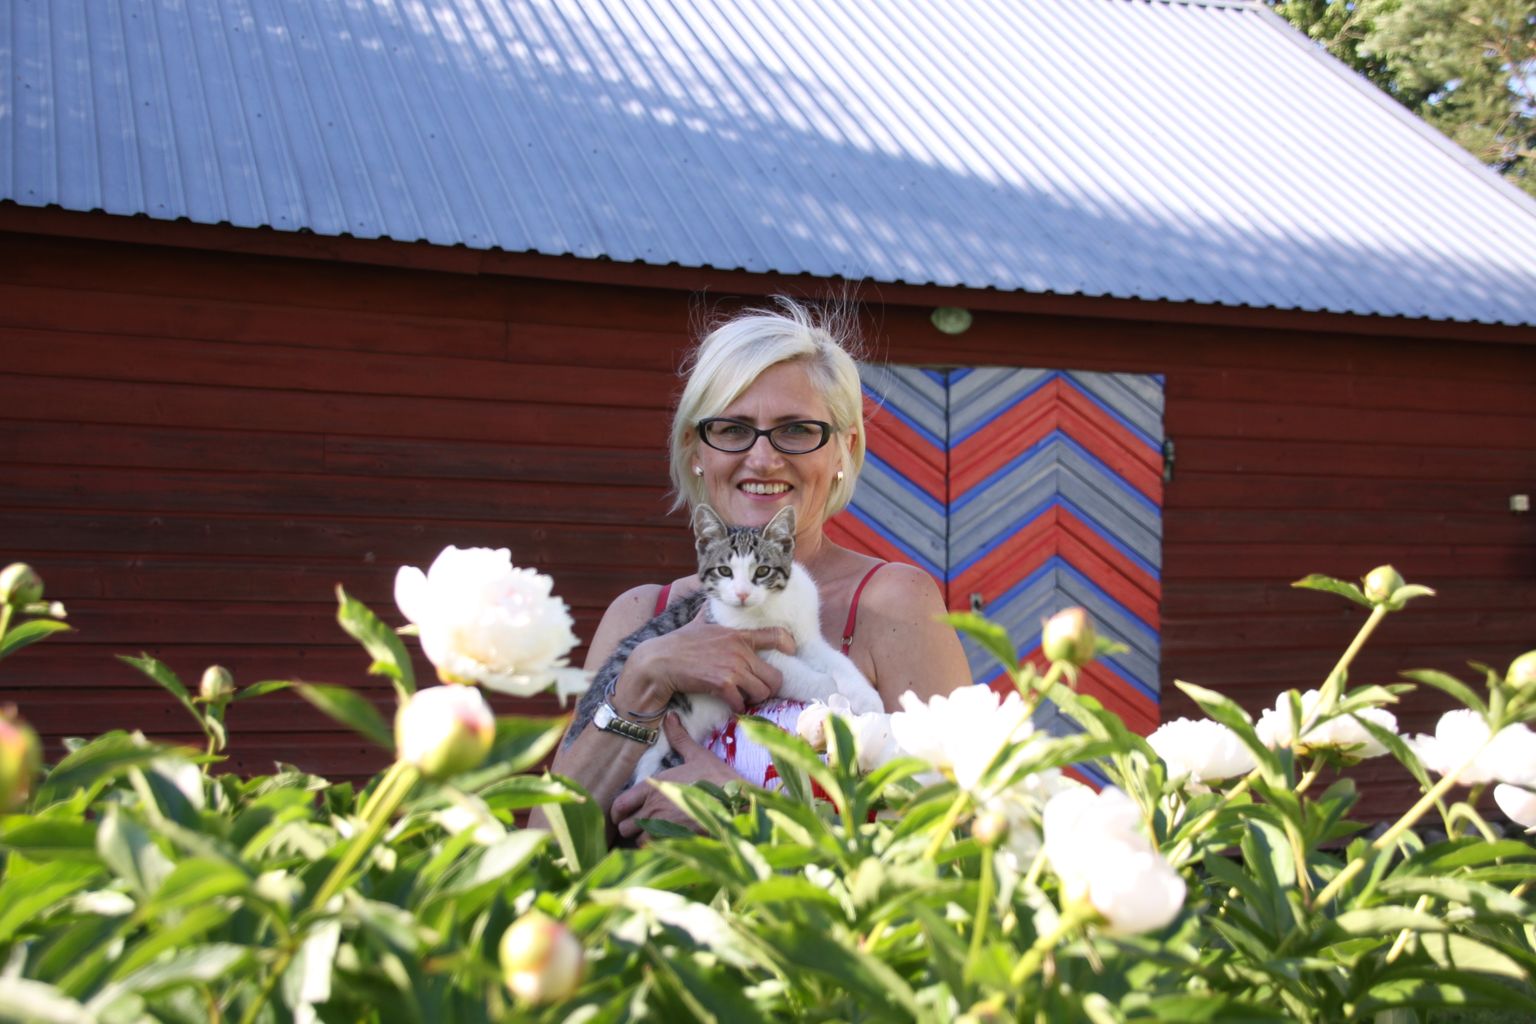 Uue-Kulli alu perenaine Annela Ojaste koondas pildile oma lemmikud: kass Oskari, põlvest-põlve hoitud pojengipõõsa ja kevadel Paide kihelkonna värvidesse võõbatud uksed.